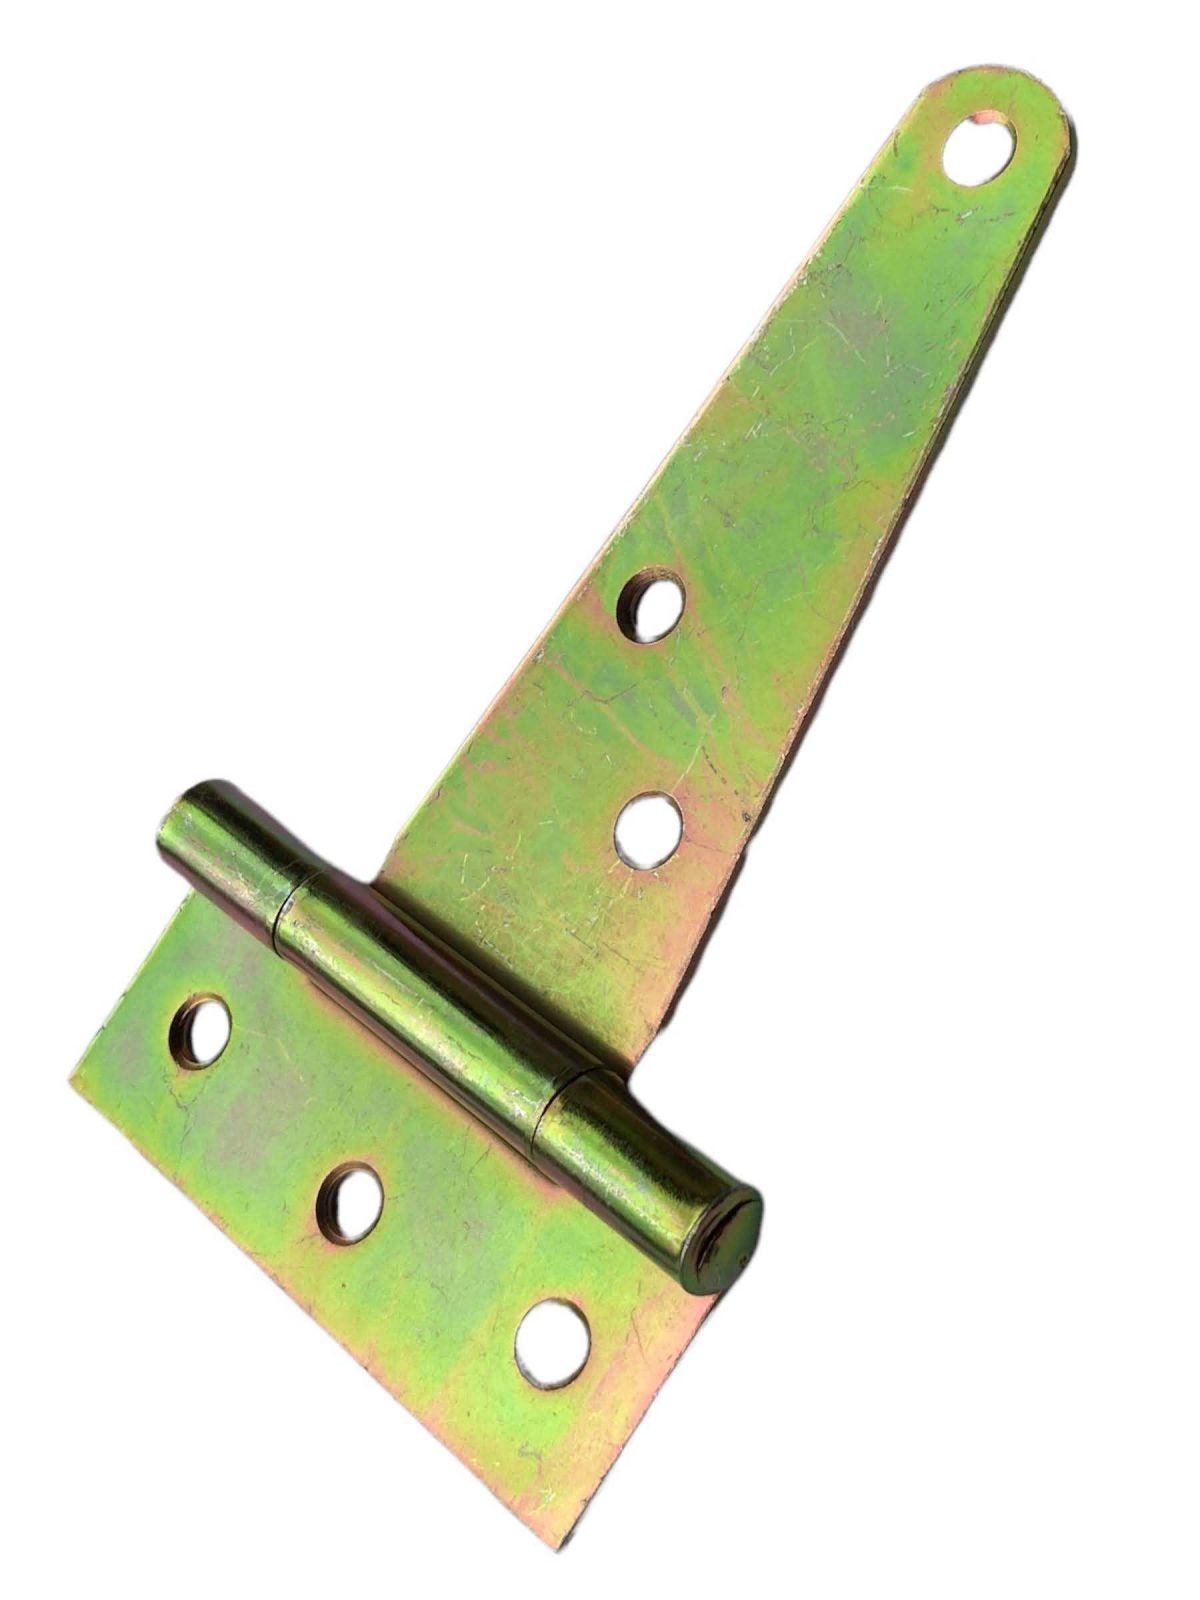 Závěs - pant ocelový na dřevěné vrata - typ T, 130x26x80mm, Zn. žlutý